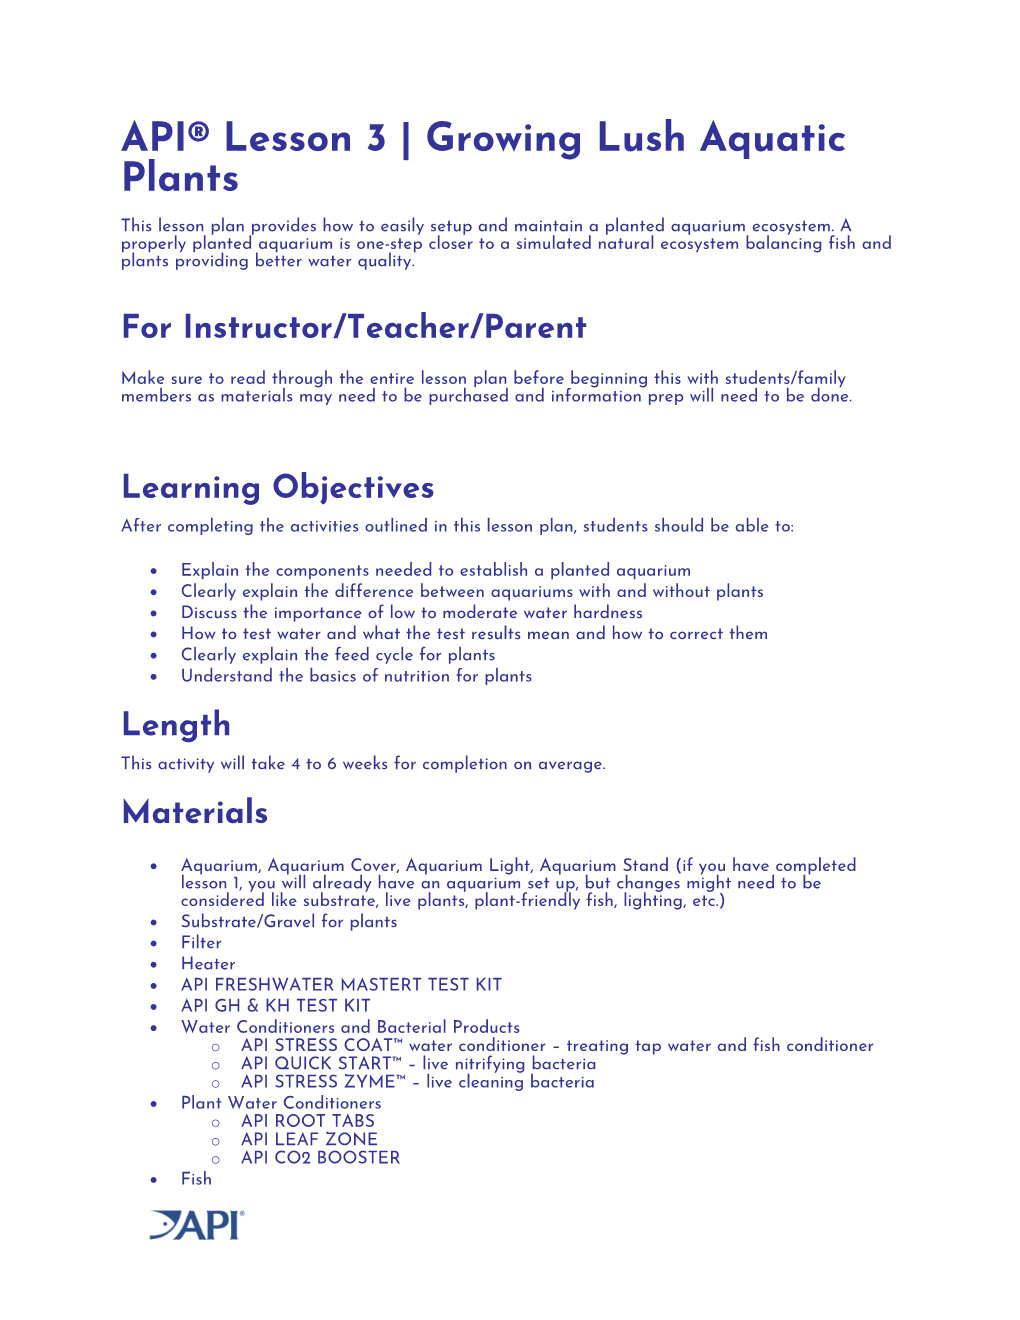 API® Lesson 3 | Growing Lush Aquatic Plants